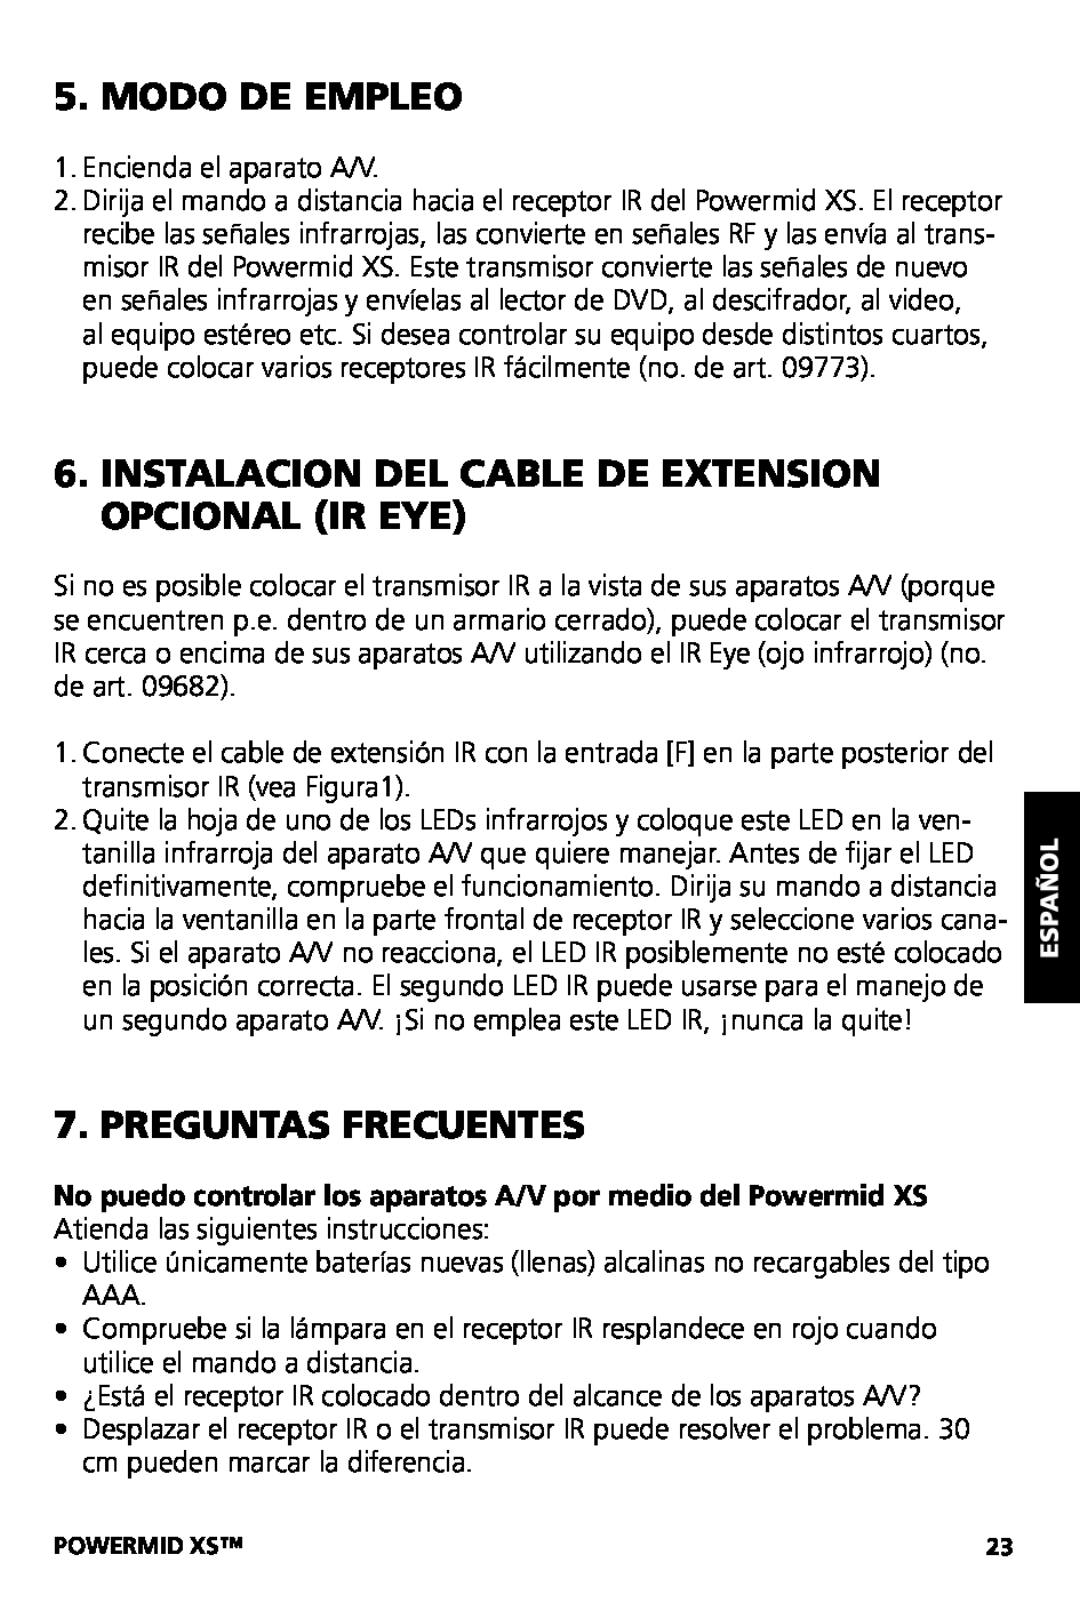 Marmitek XS user manual Modo De Empleo, Instalacion Del Cable De Extension Opcional Ir Eye, Preguntas Frecuentes 